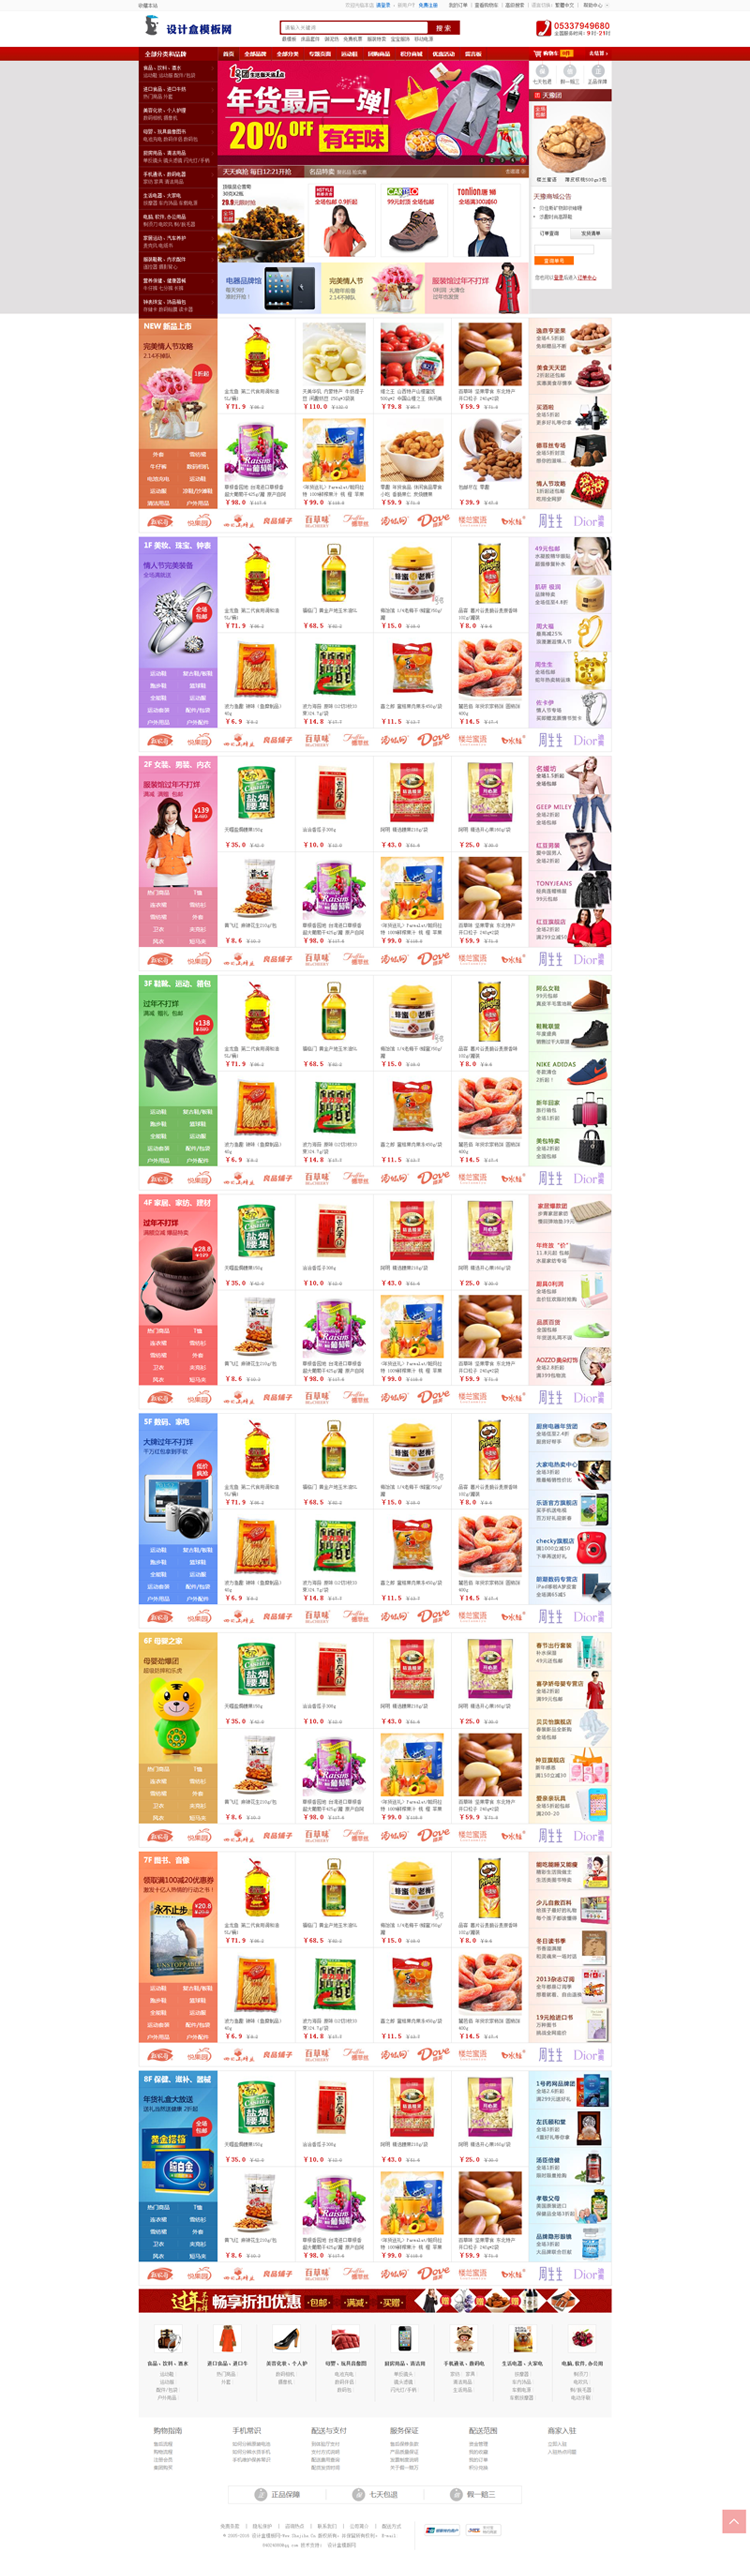 ecshop模板红色大气宽屏购物食品商城网站模板网站源码带整站数据 